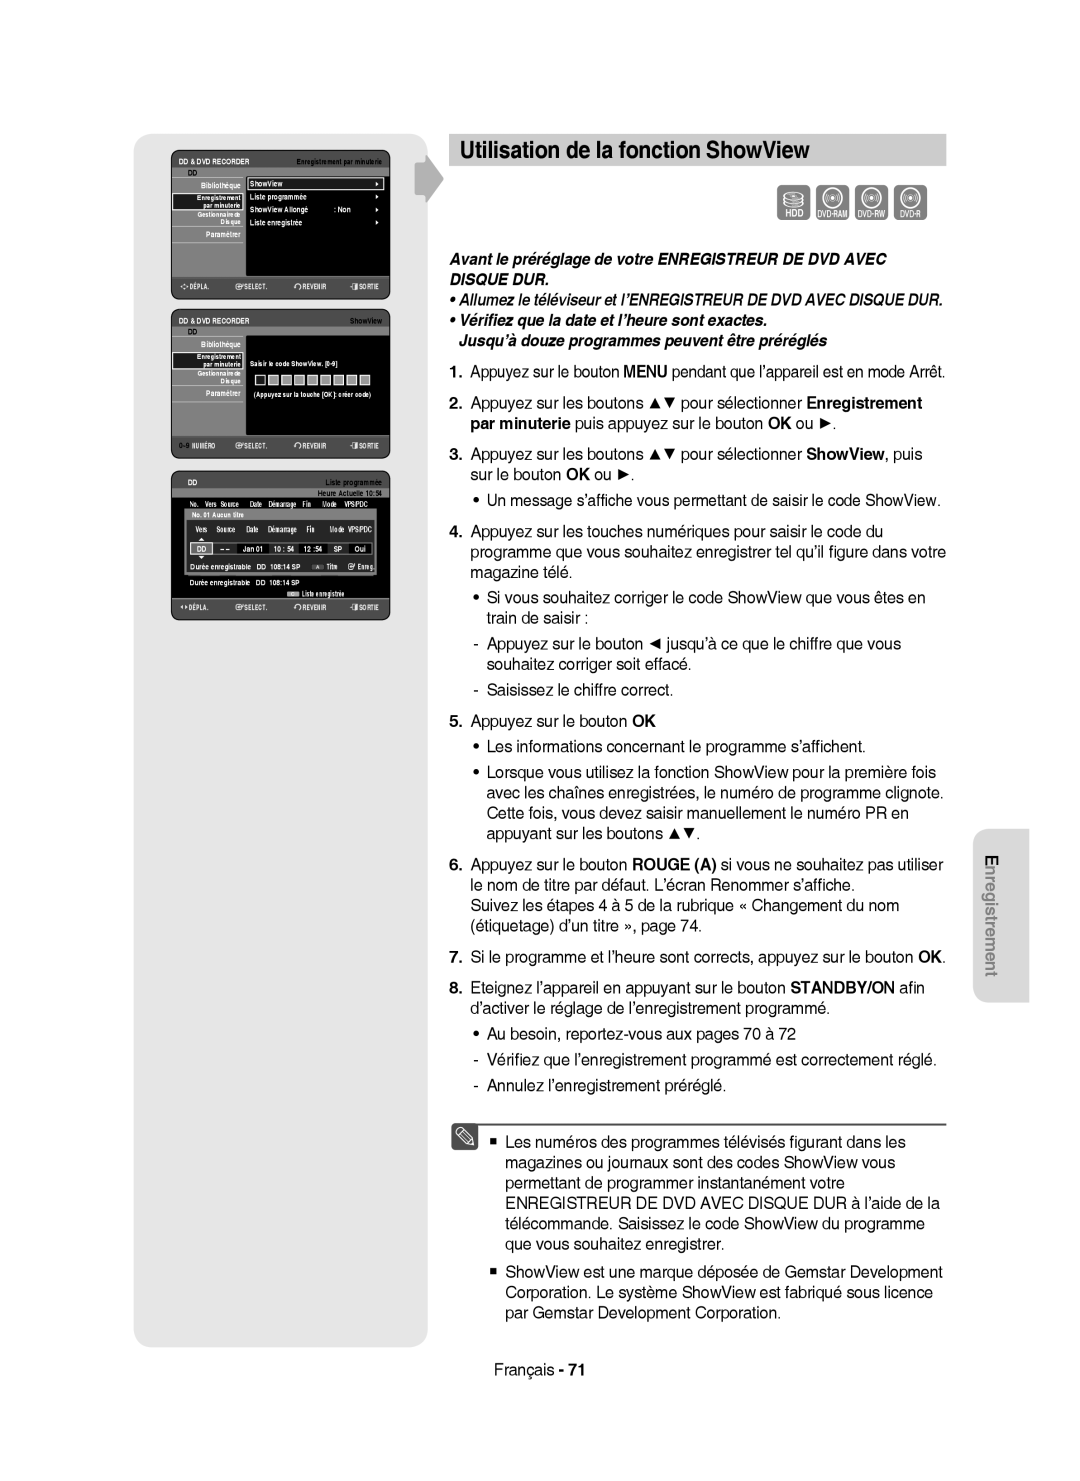 Samsung DVD-HR750/XEB, DVD-HR750/XEG, DVD-HR750/AUS manual Utilisation de la fonction ShowView, Vers Source Date 